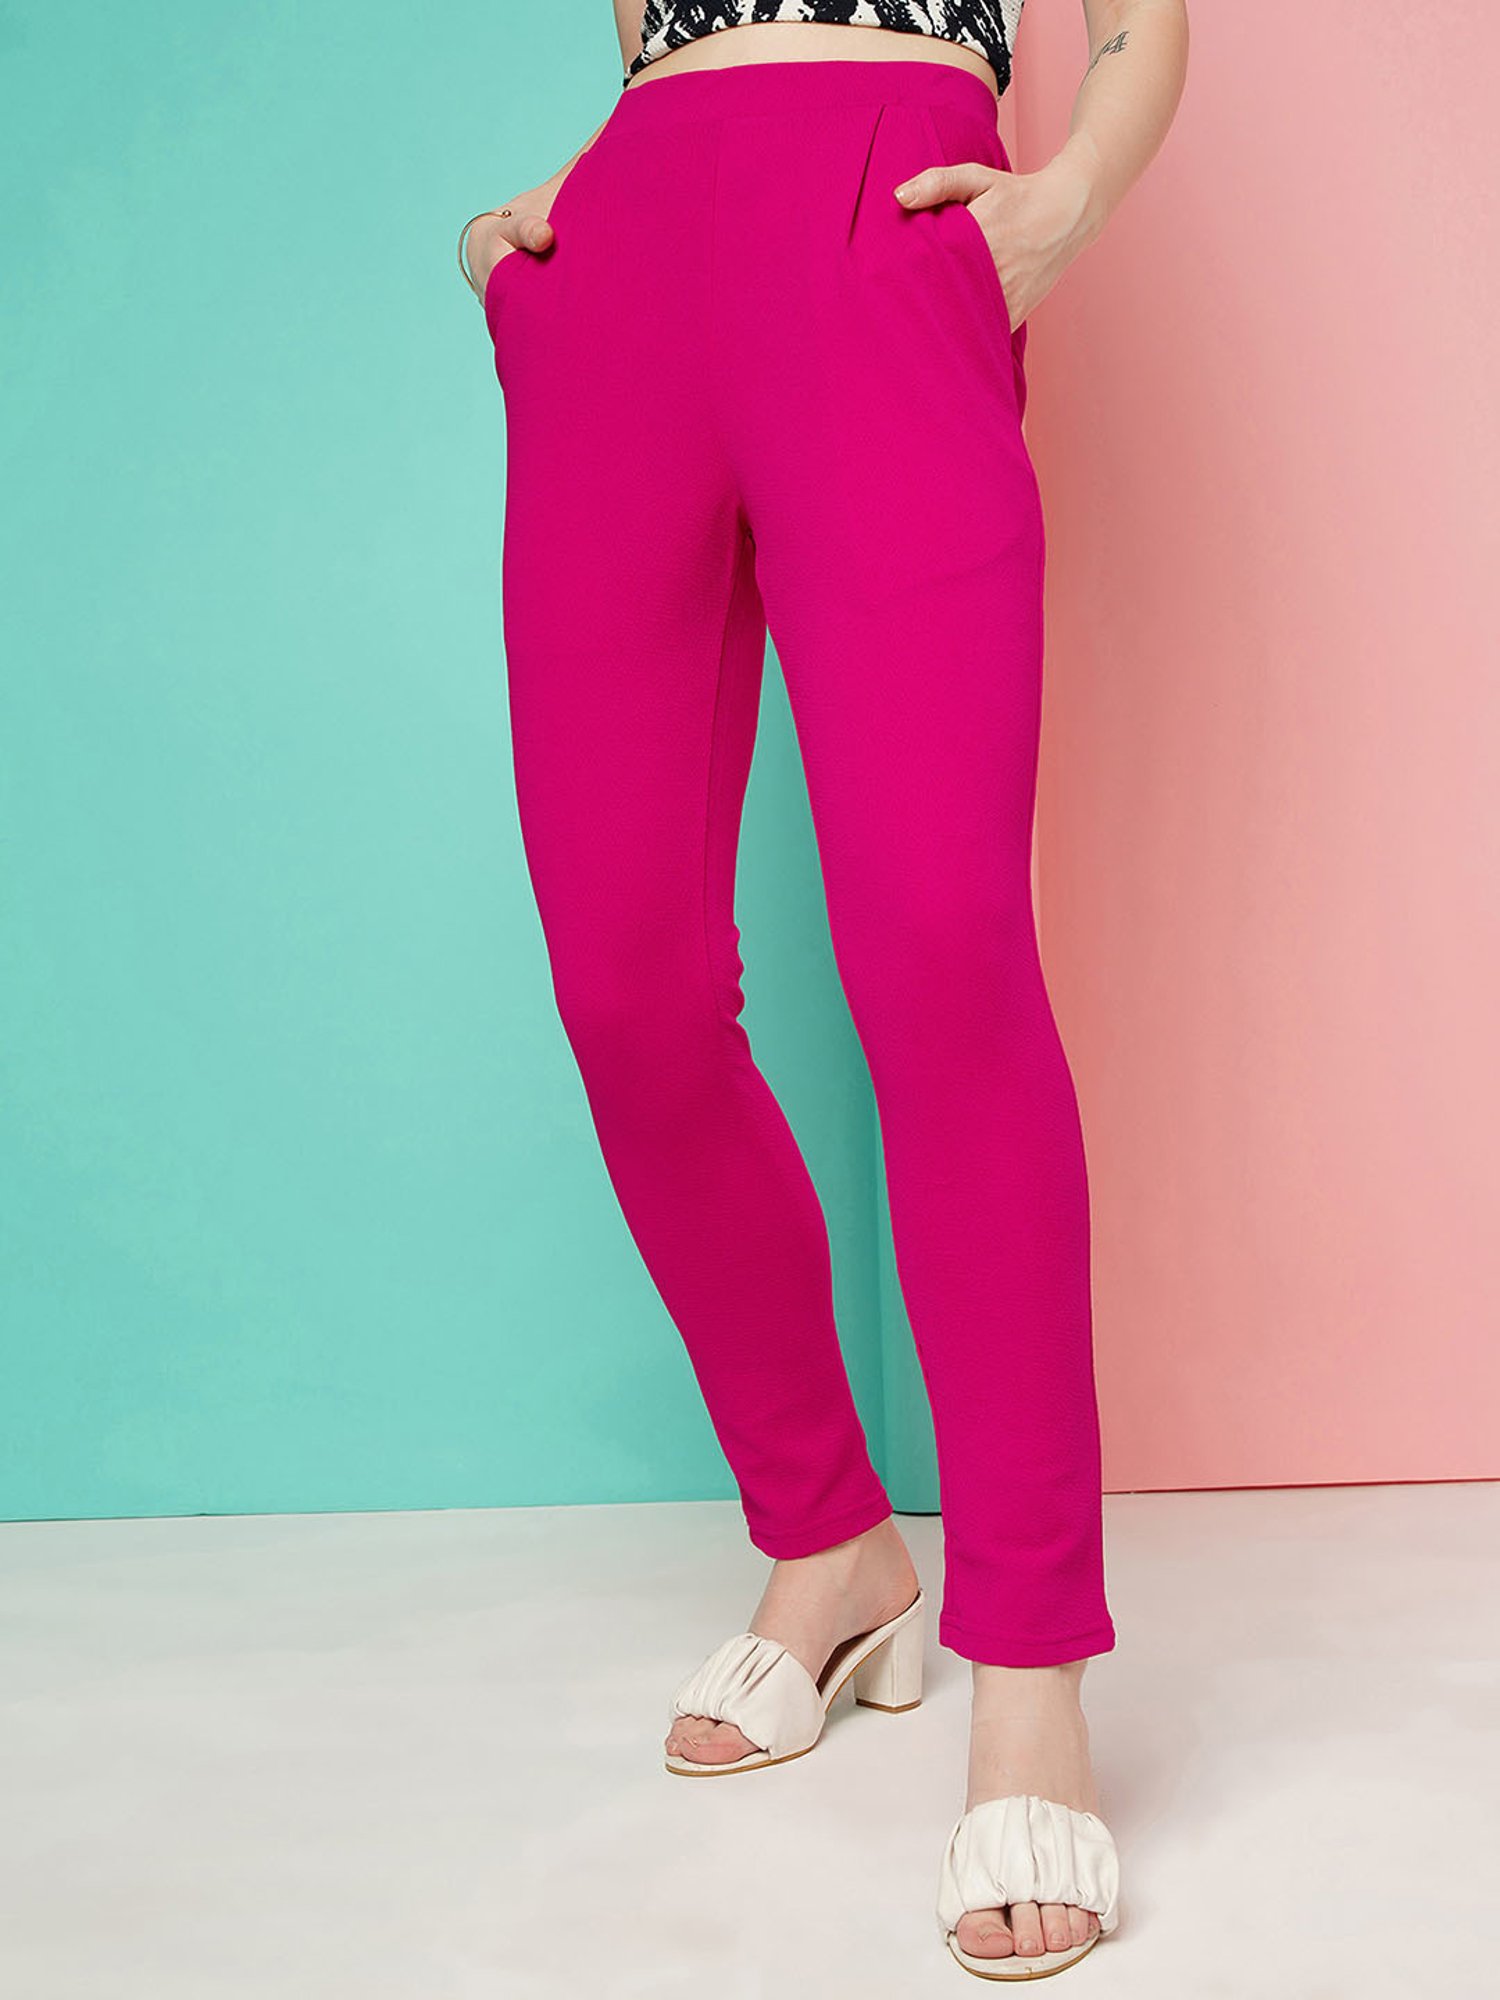 Buy Women Pink Solid Formal Regular Fit Trousers Online  786011  Van  Heusen